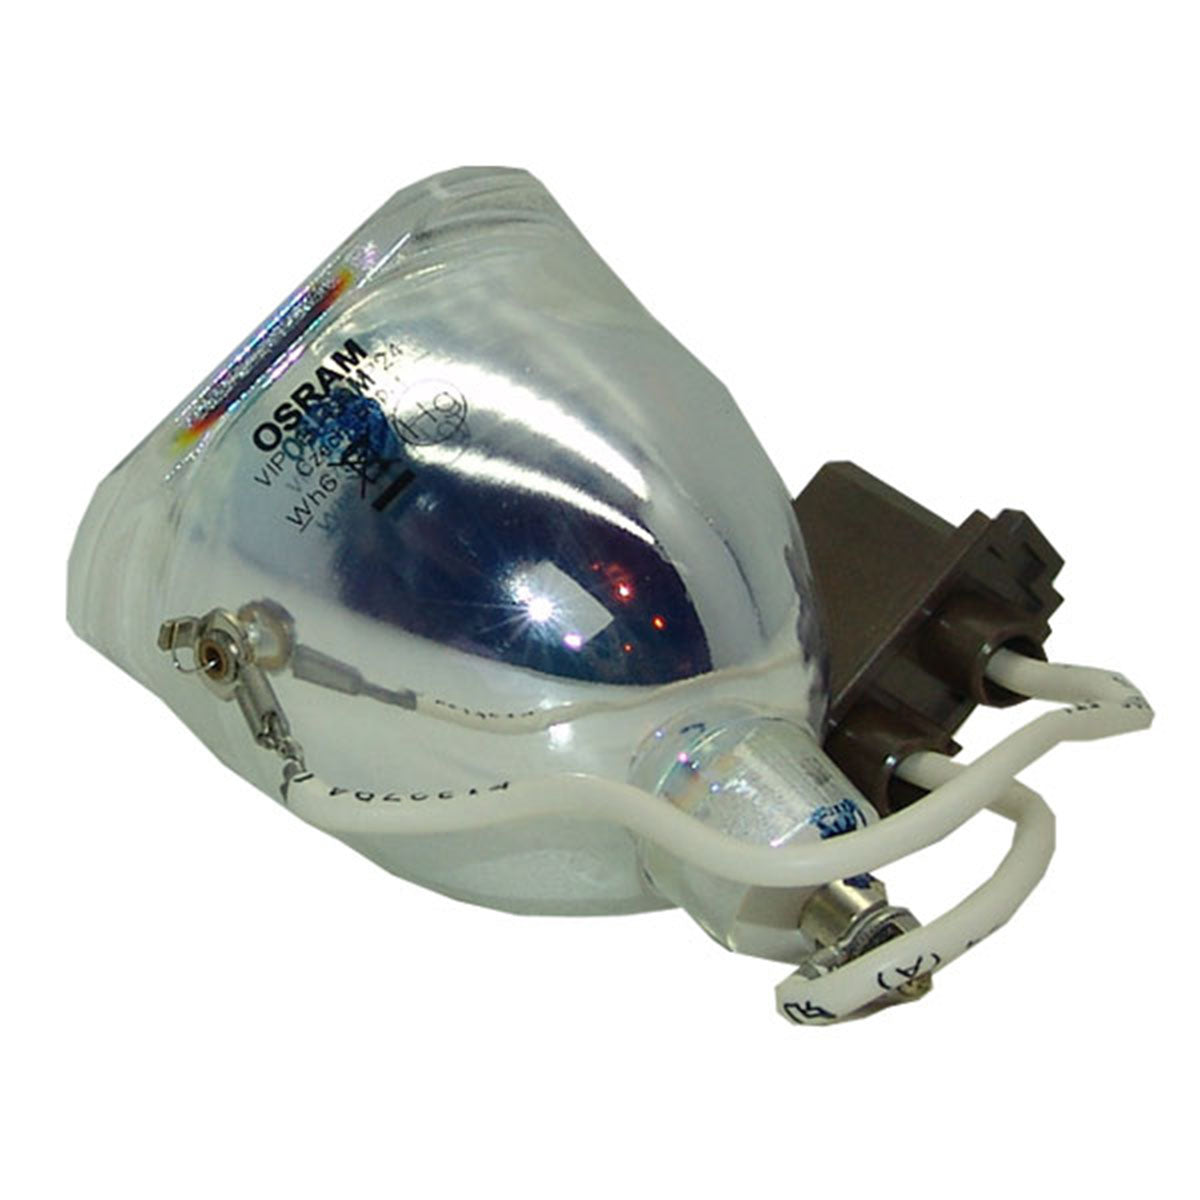 HP L1551A Osram Projector Bare Lamp